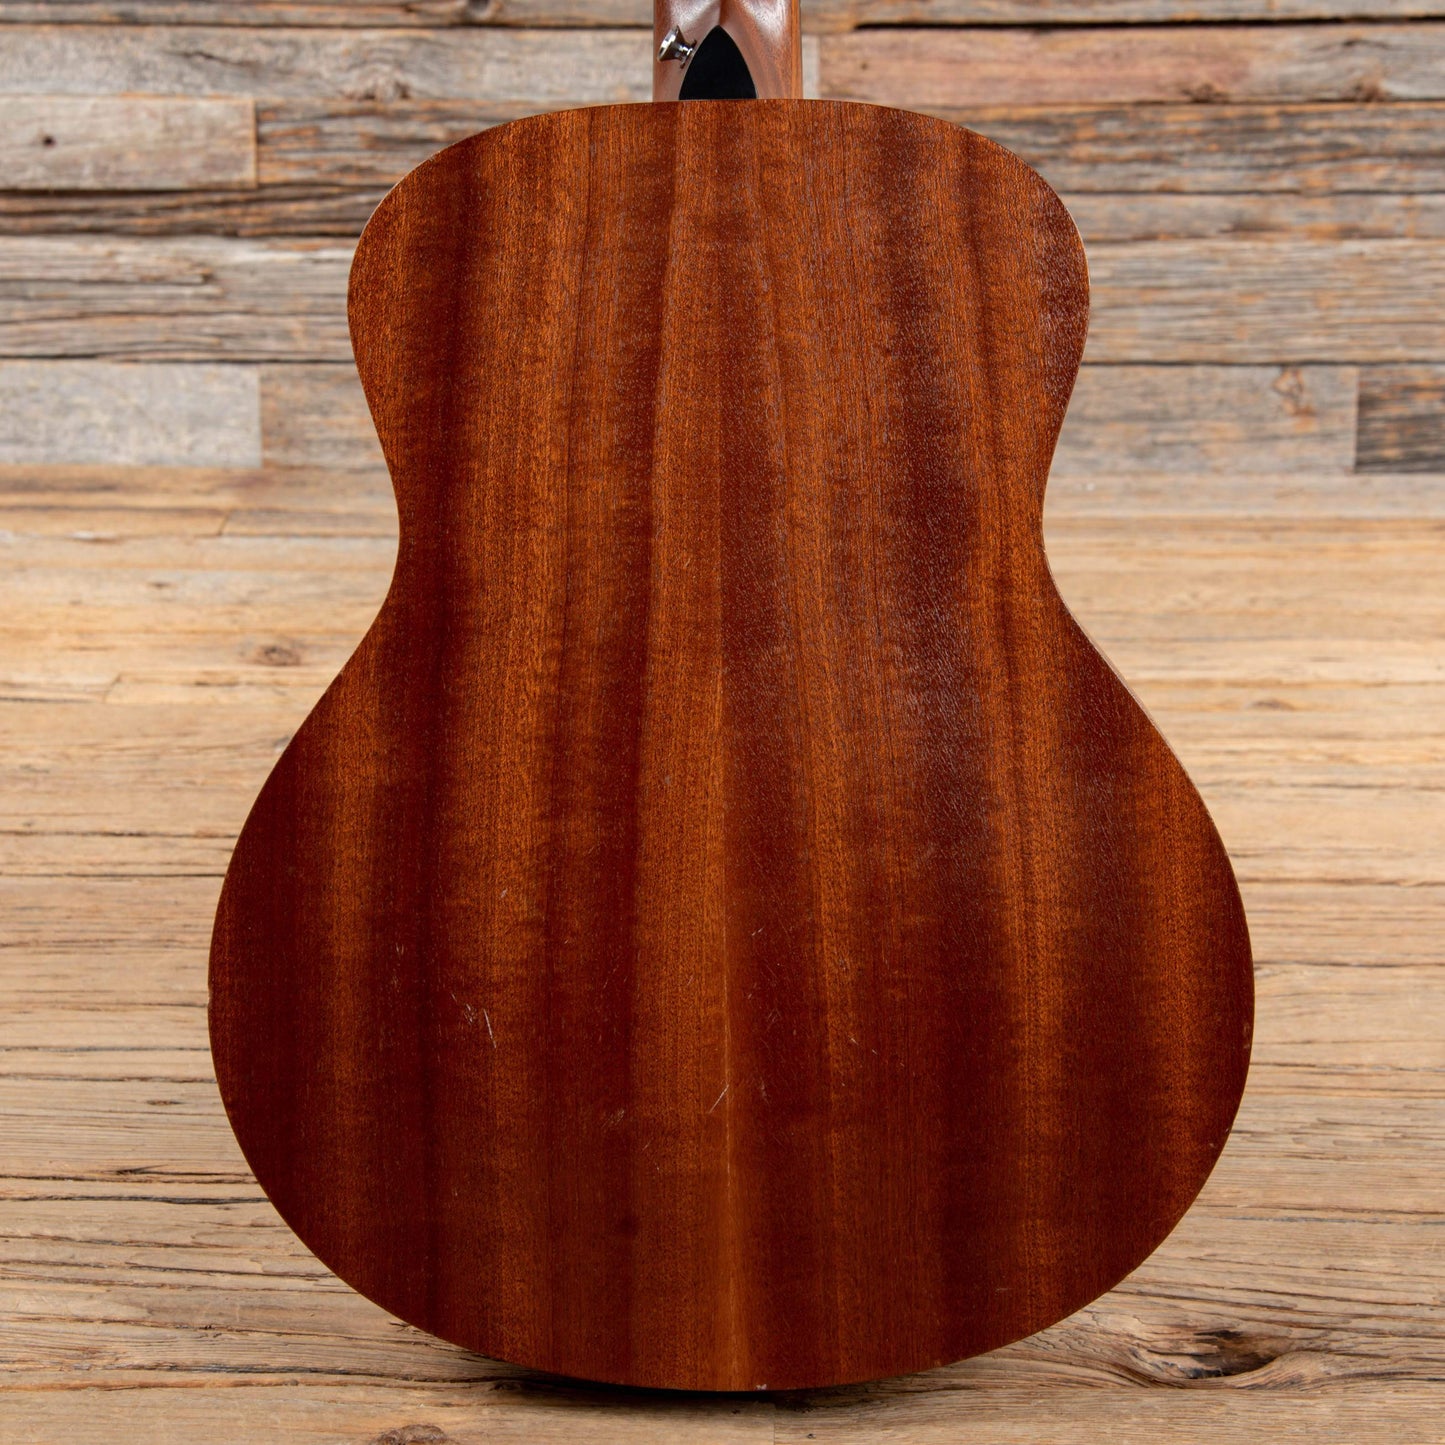 Taylor GS Mini Natural 2013 Acoustic Guitars / Mini/Travel